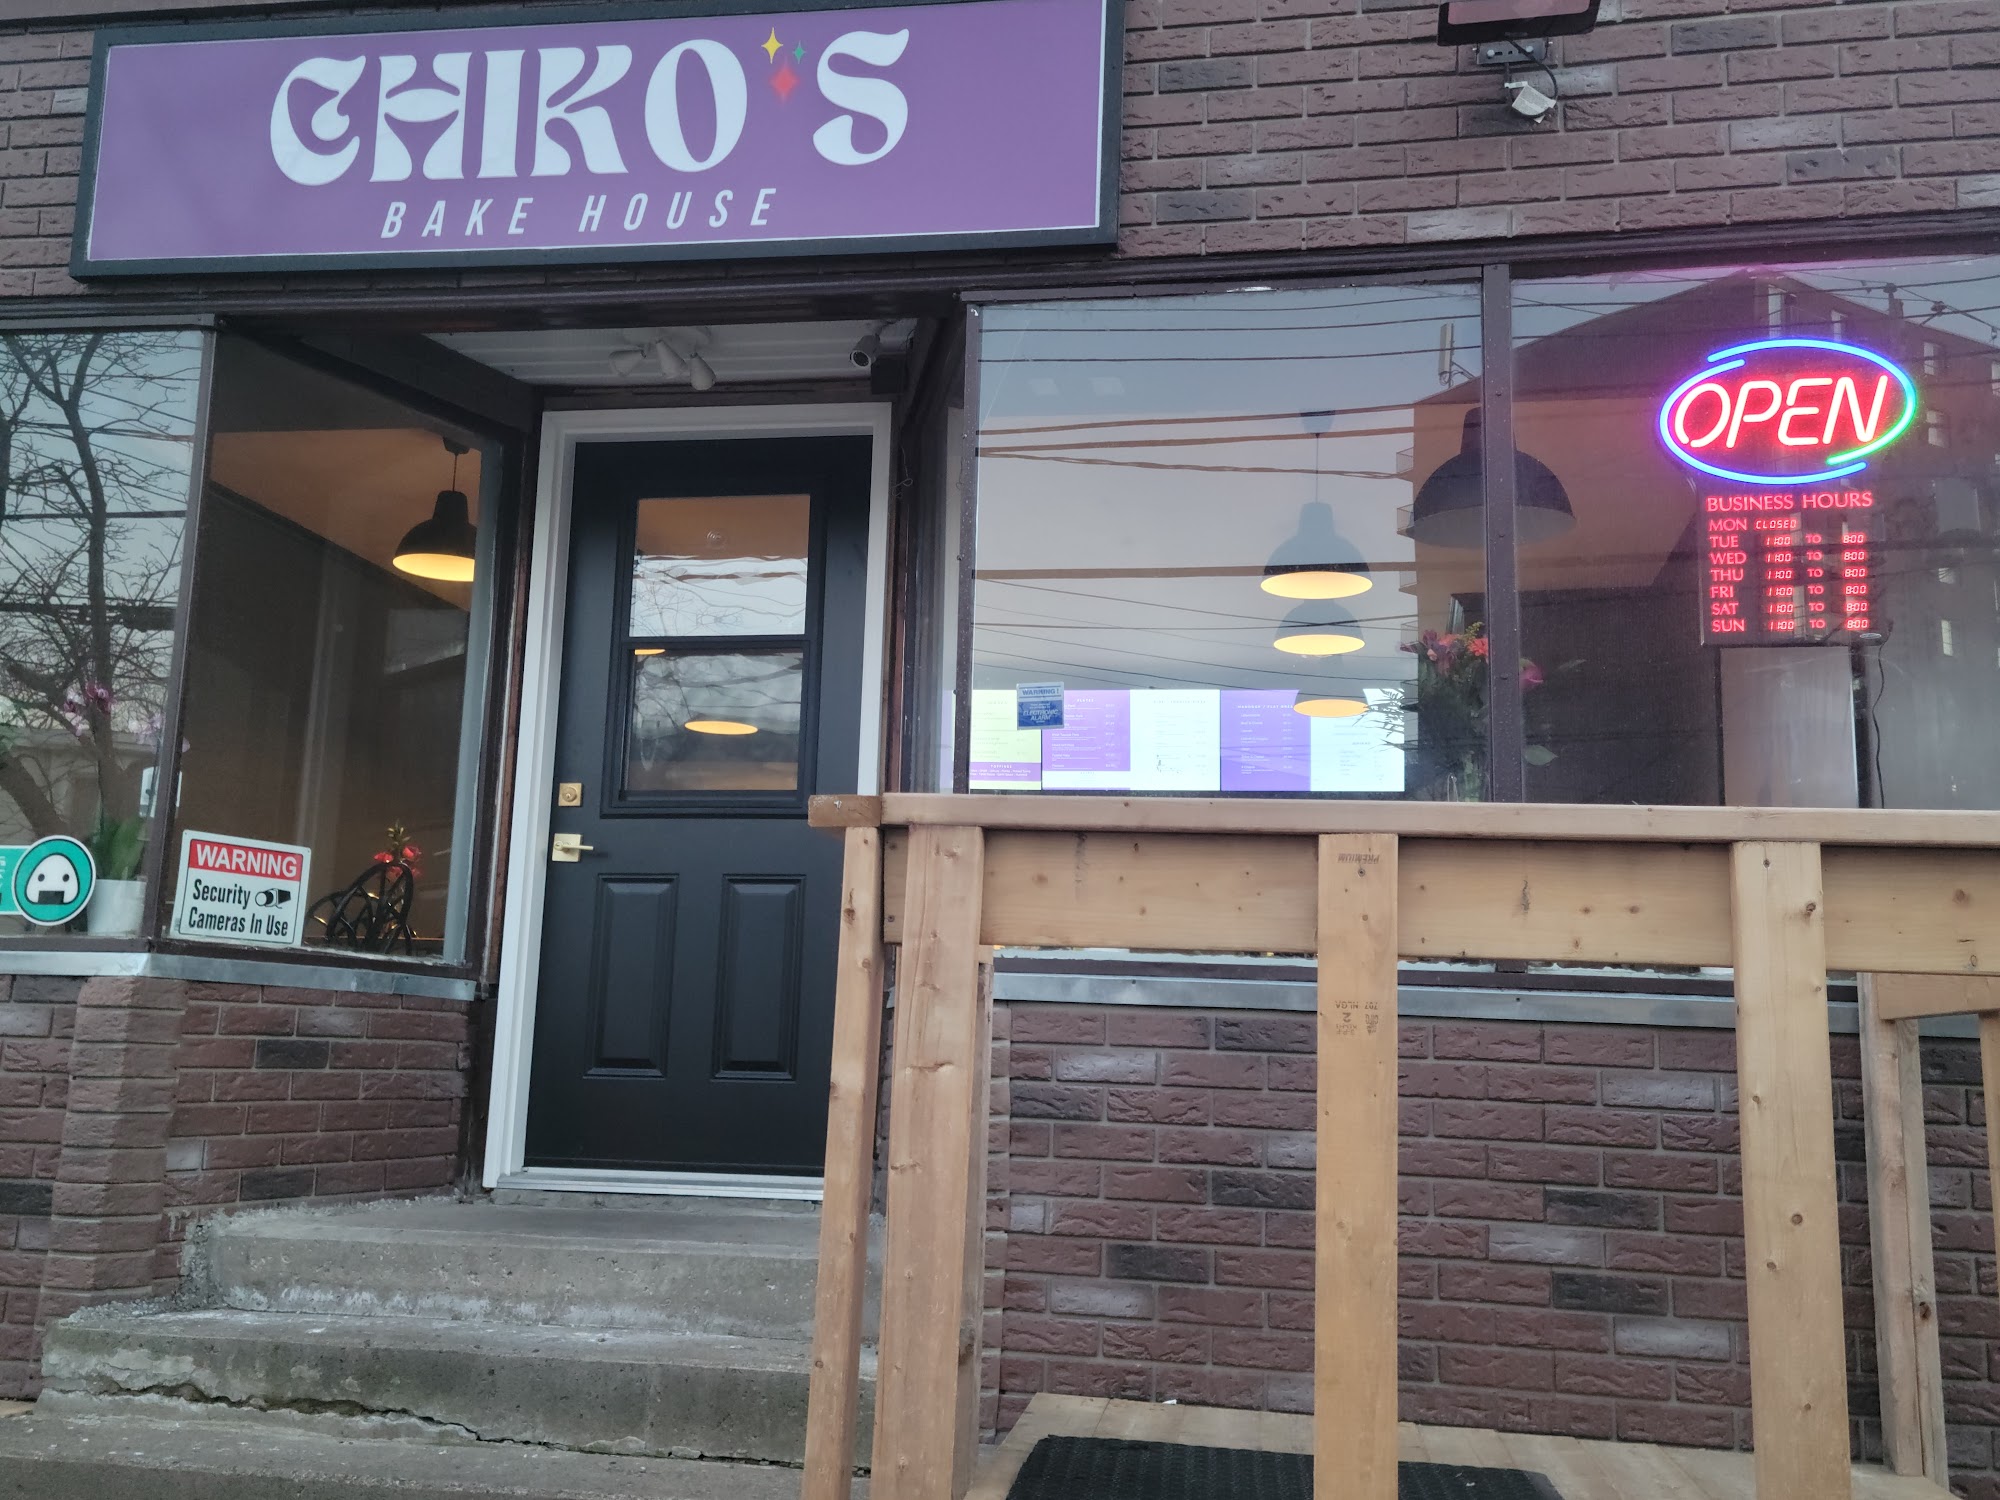 Chiko’s bake house